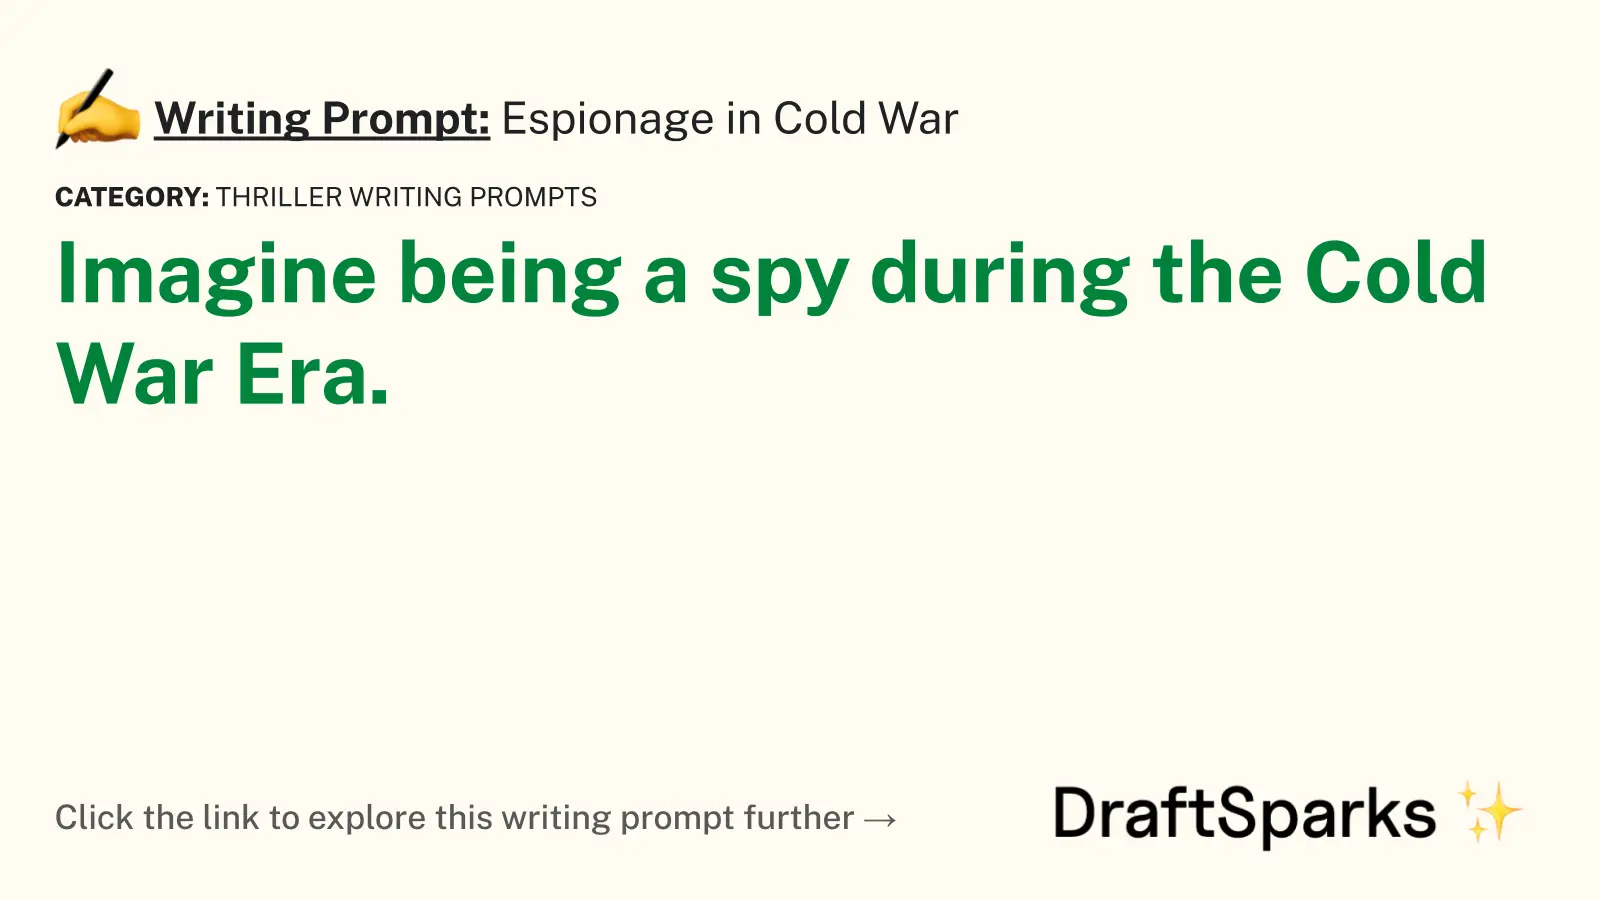 Espionage in Cold War